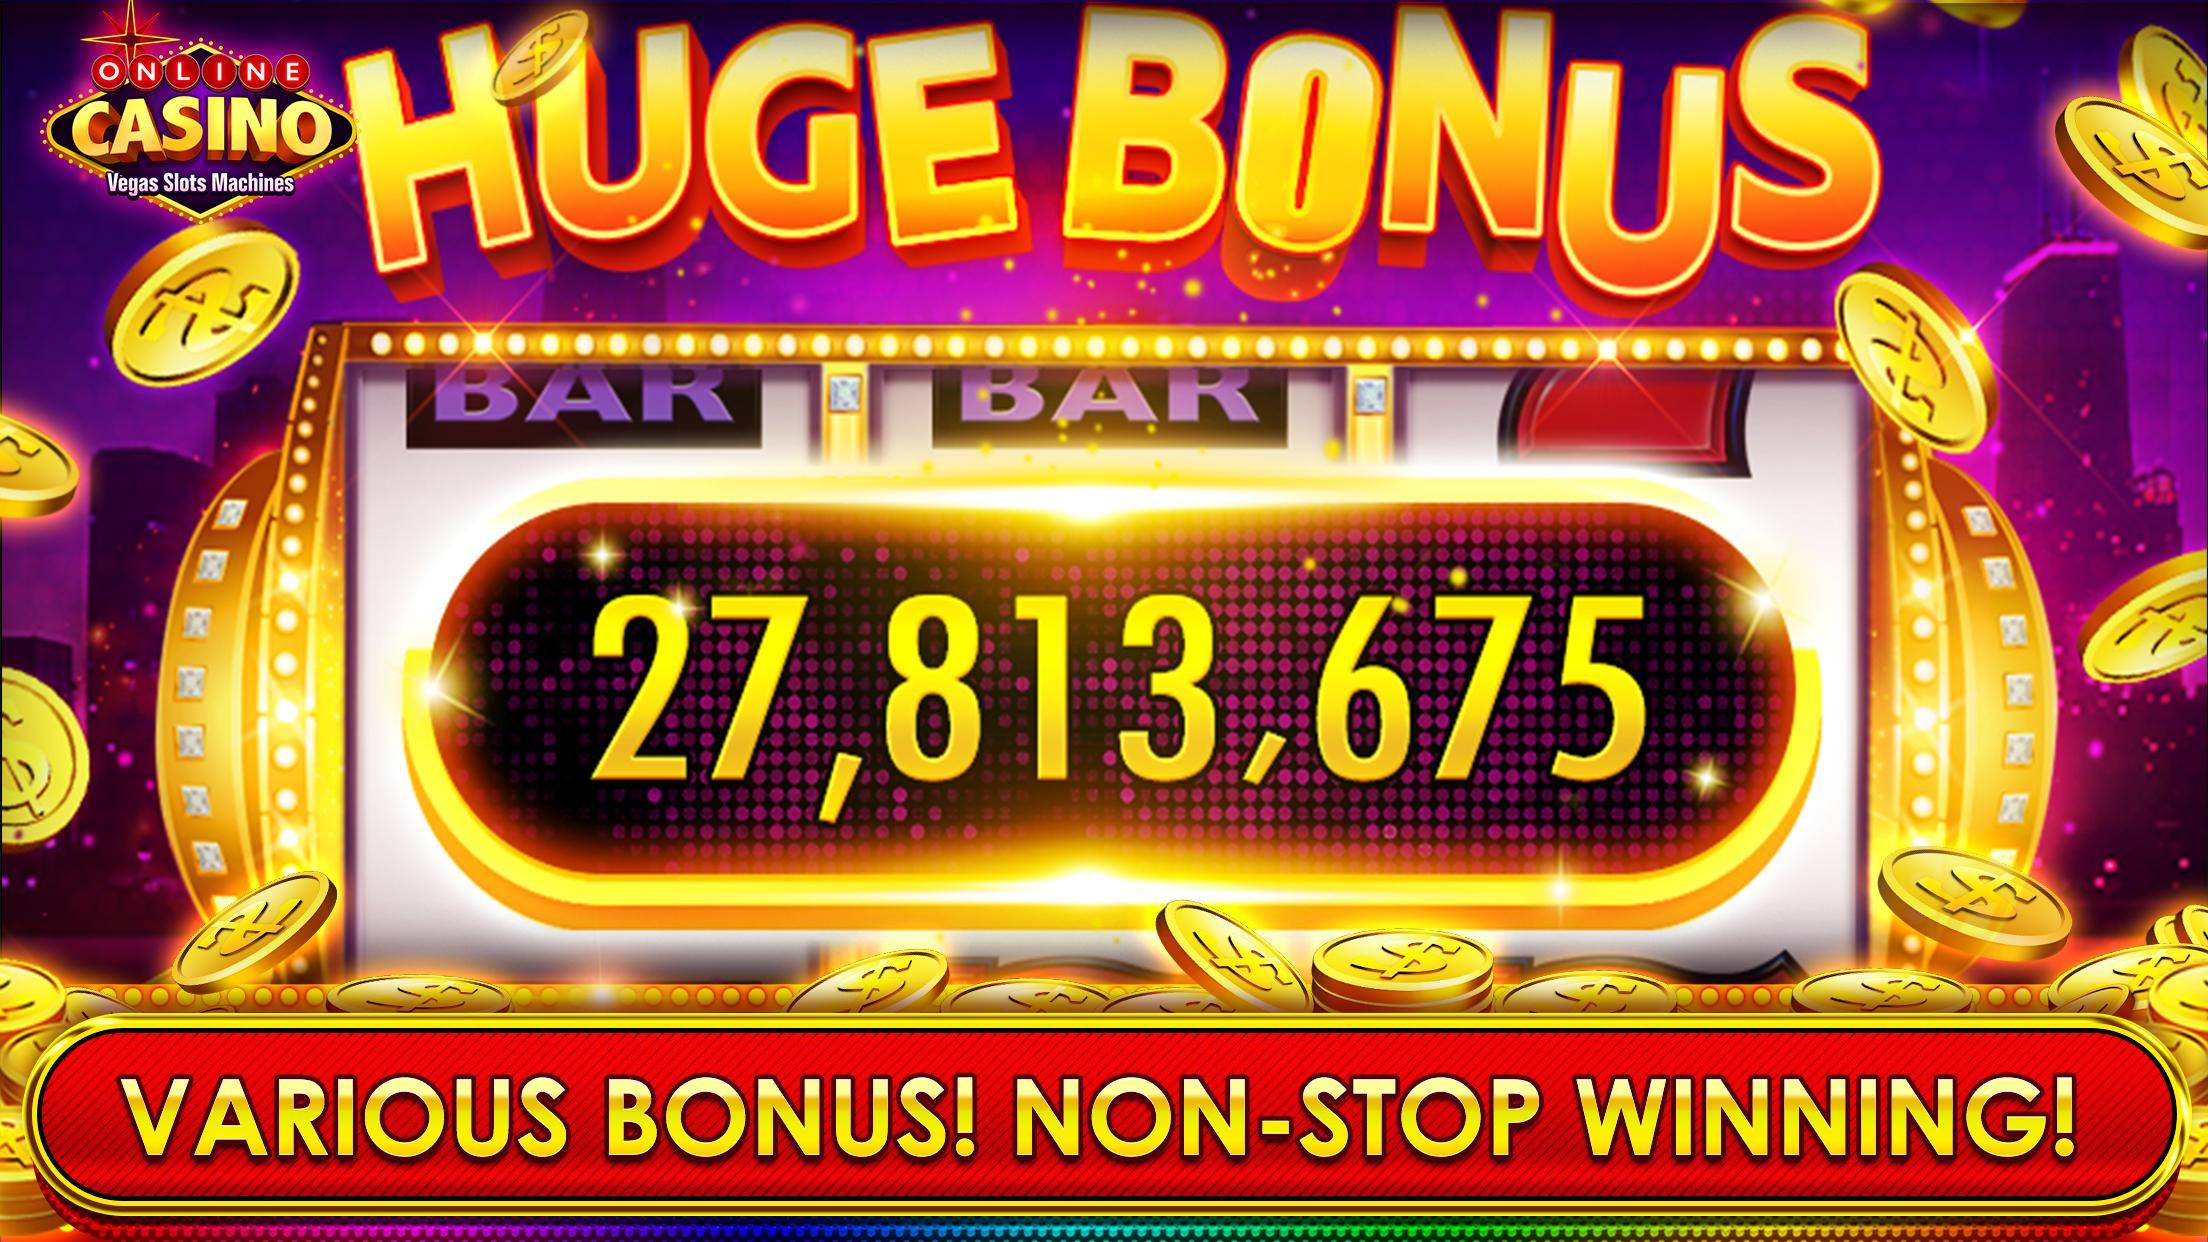 Online Casino Vegas Slots Machines 5.2.0 Screenshot 4